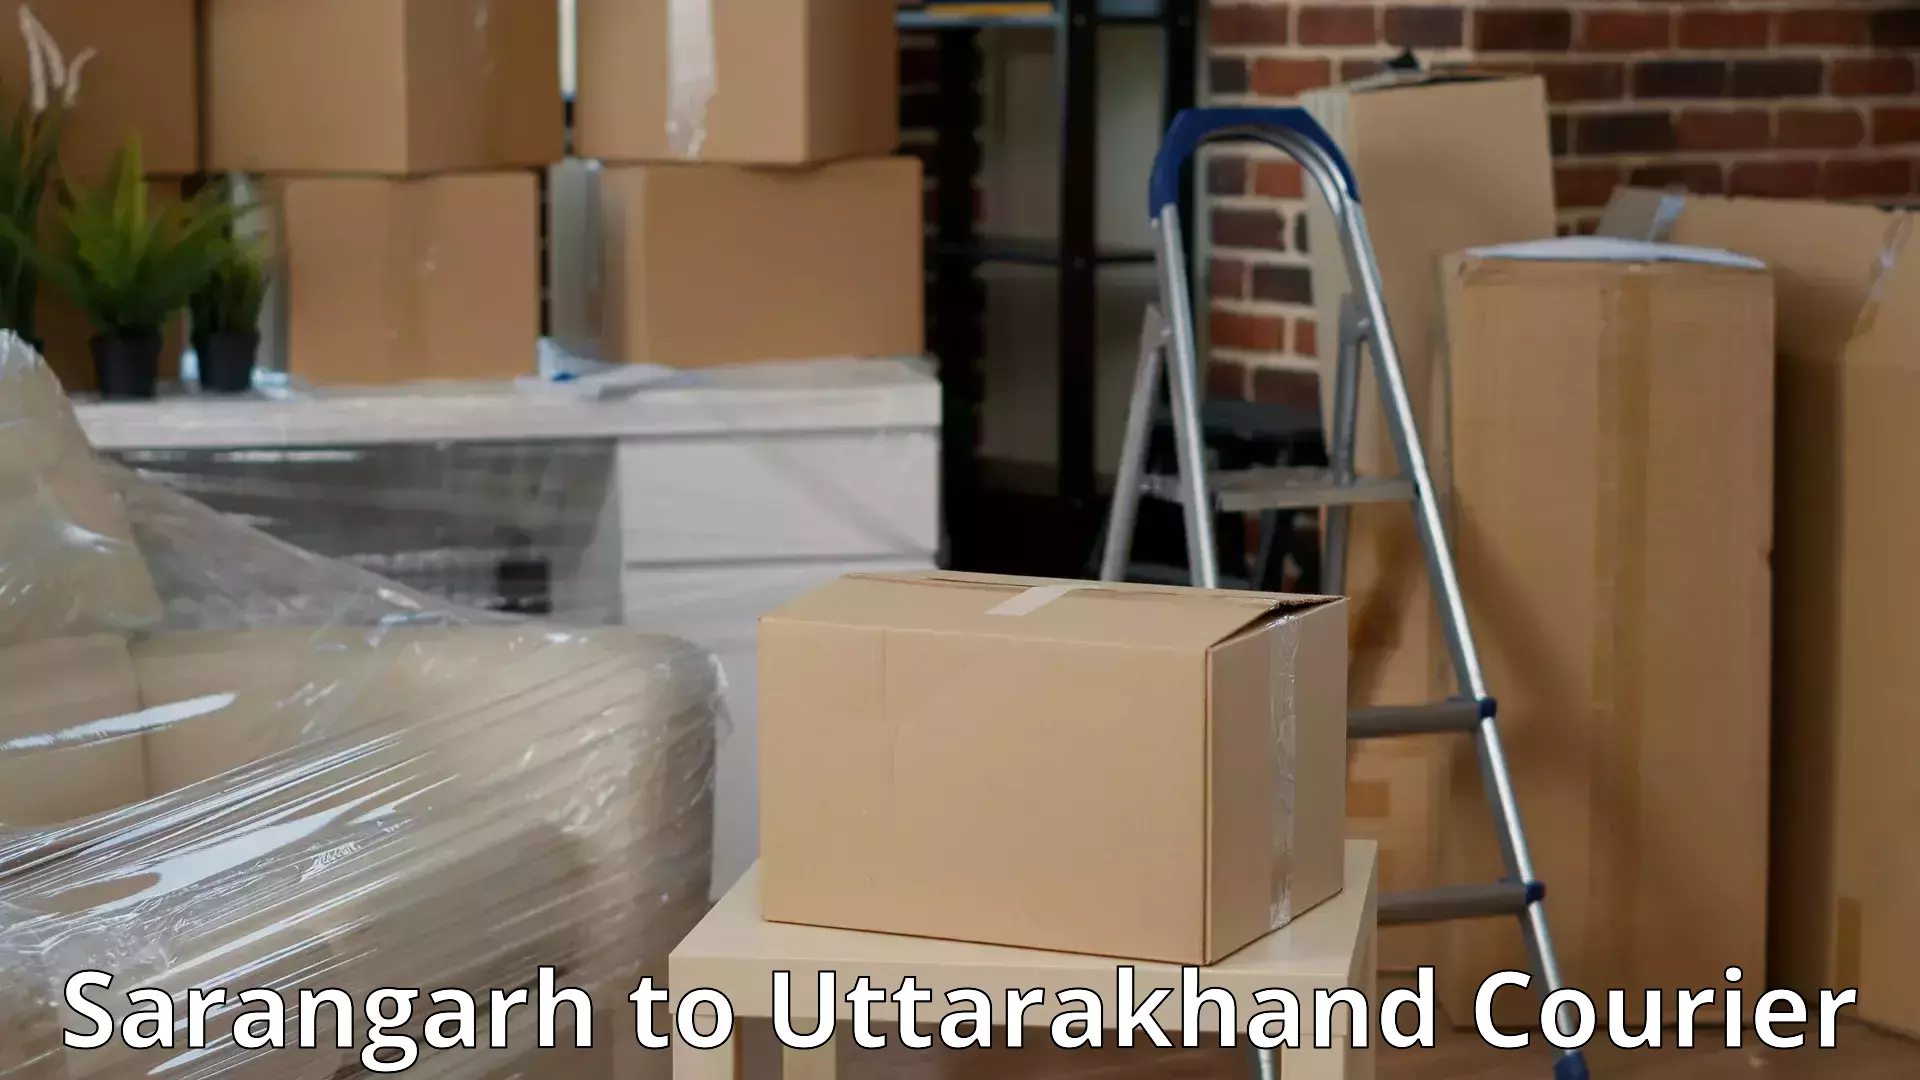 Expert moving and storage Sarangarh to Bhagwanpur